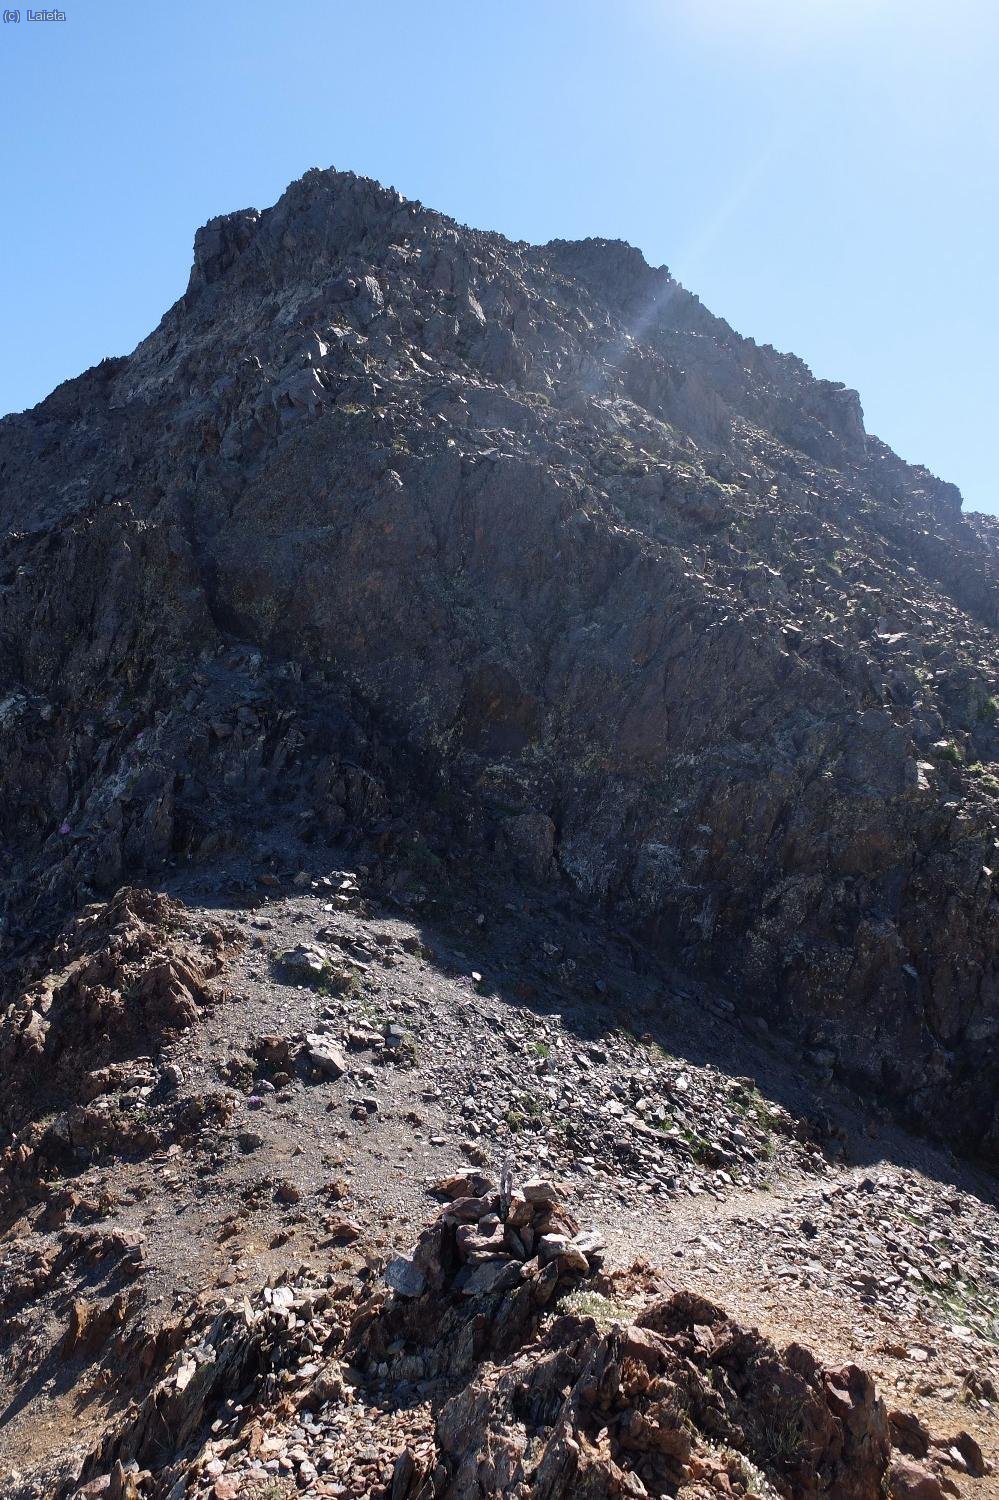 Pico de Infiernos Occidental